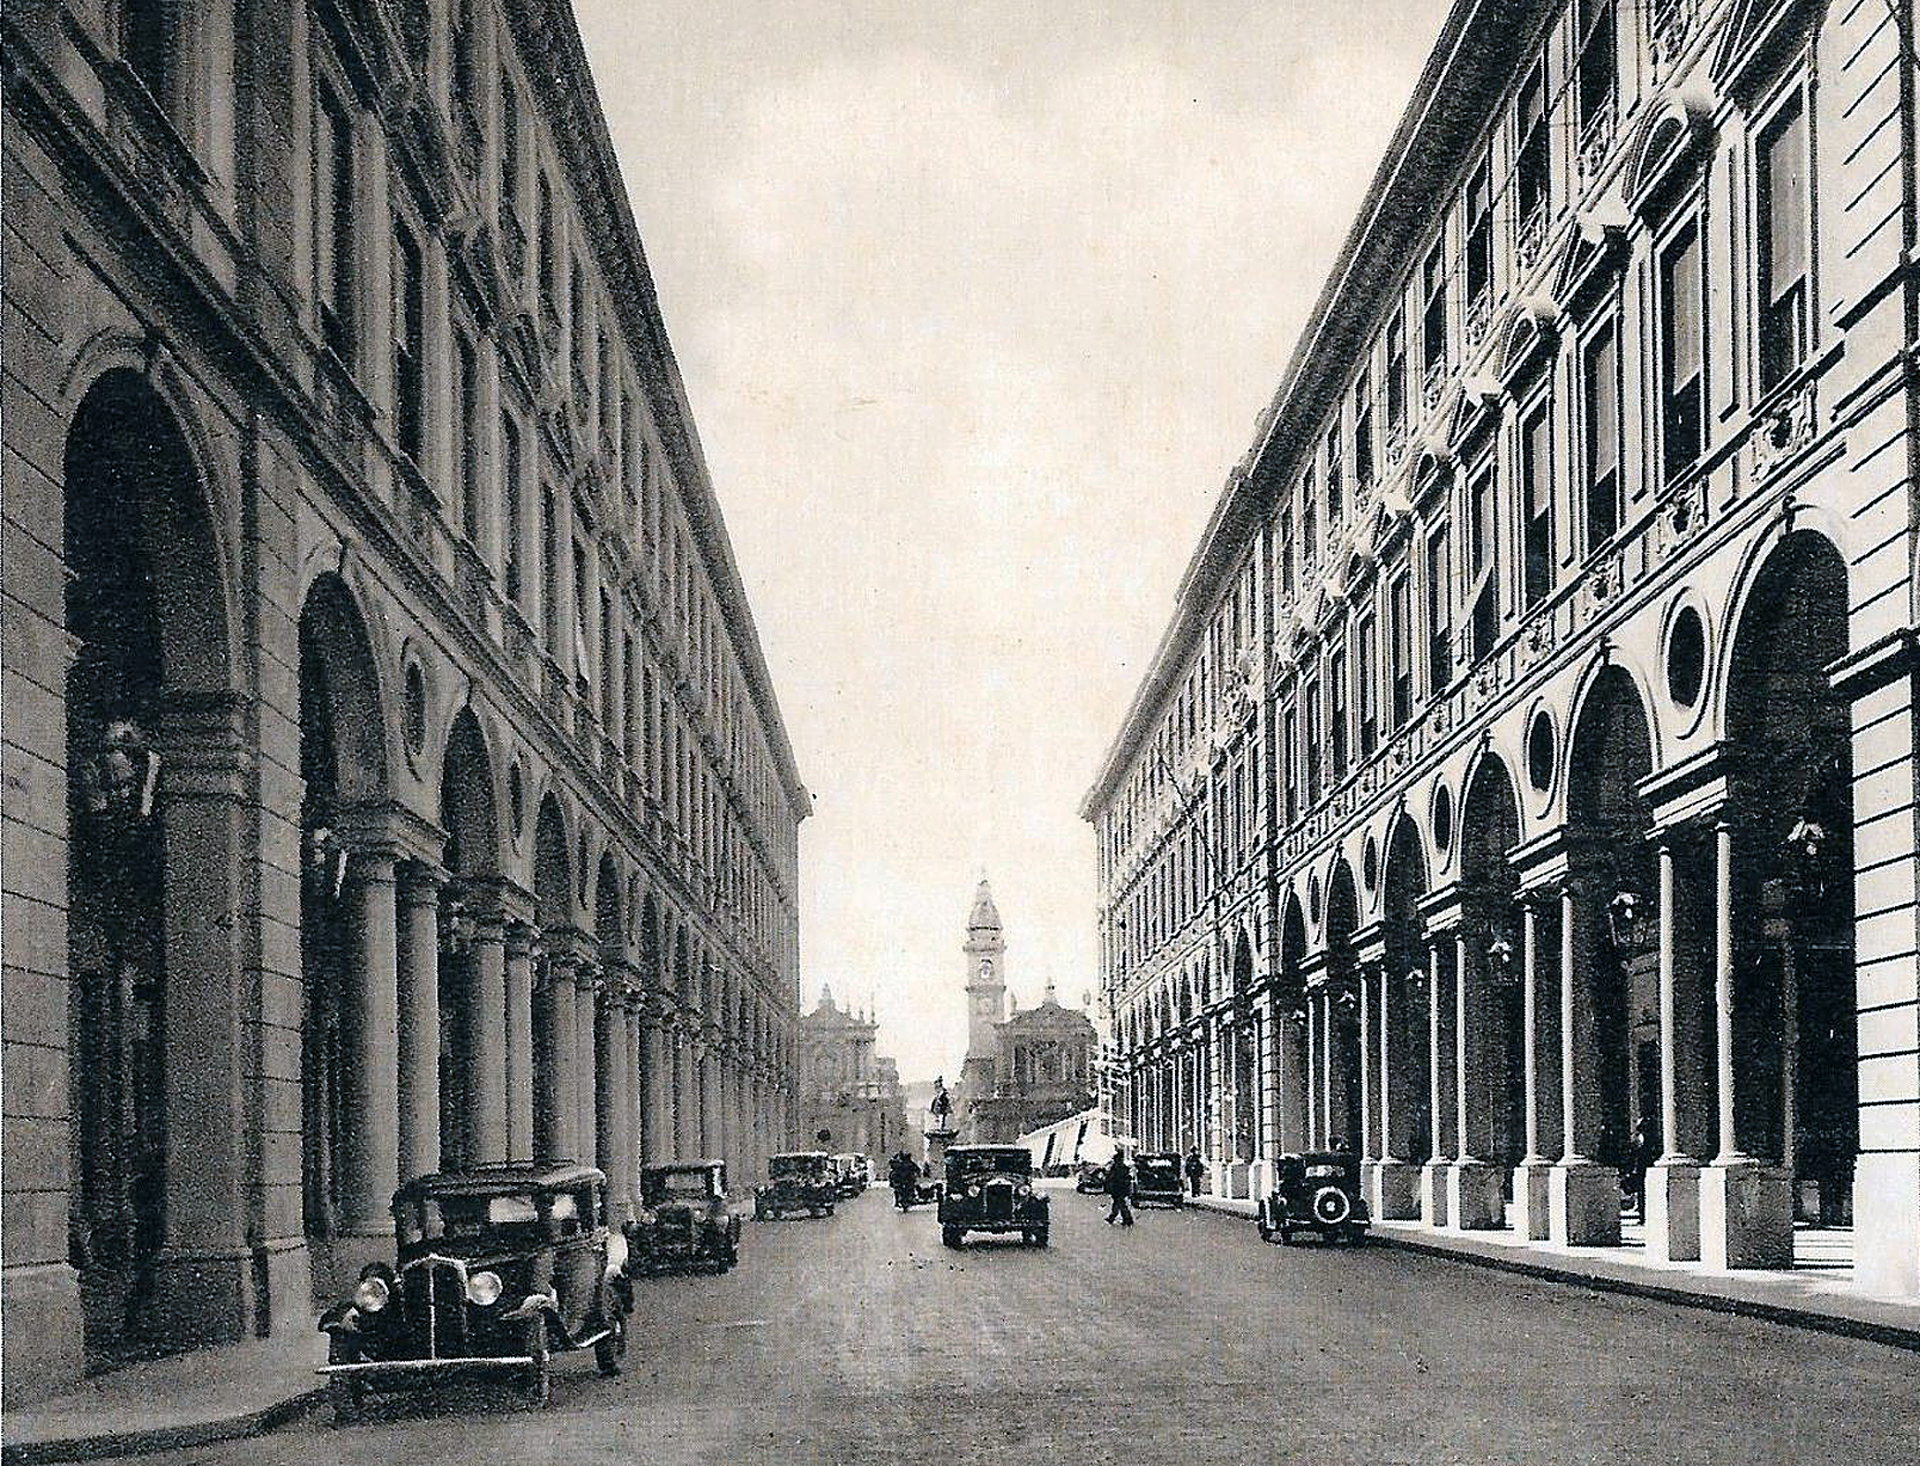 1920x1466px-TORINO-TURIN---Via-Roma-da-Piazza-Castello-1935---old-cars-vWA24